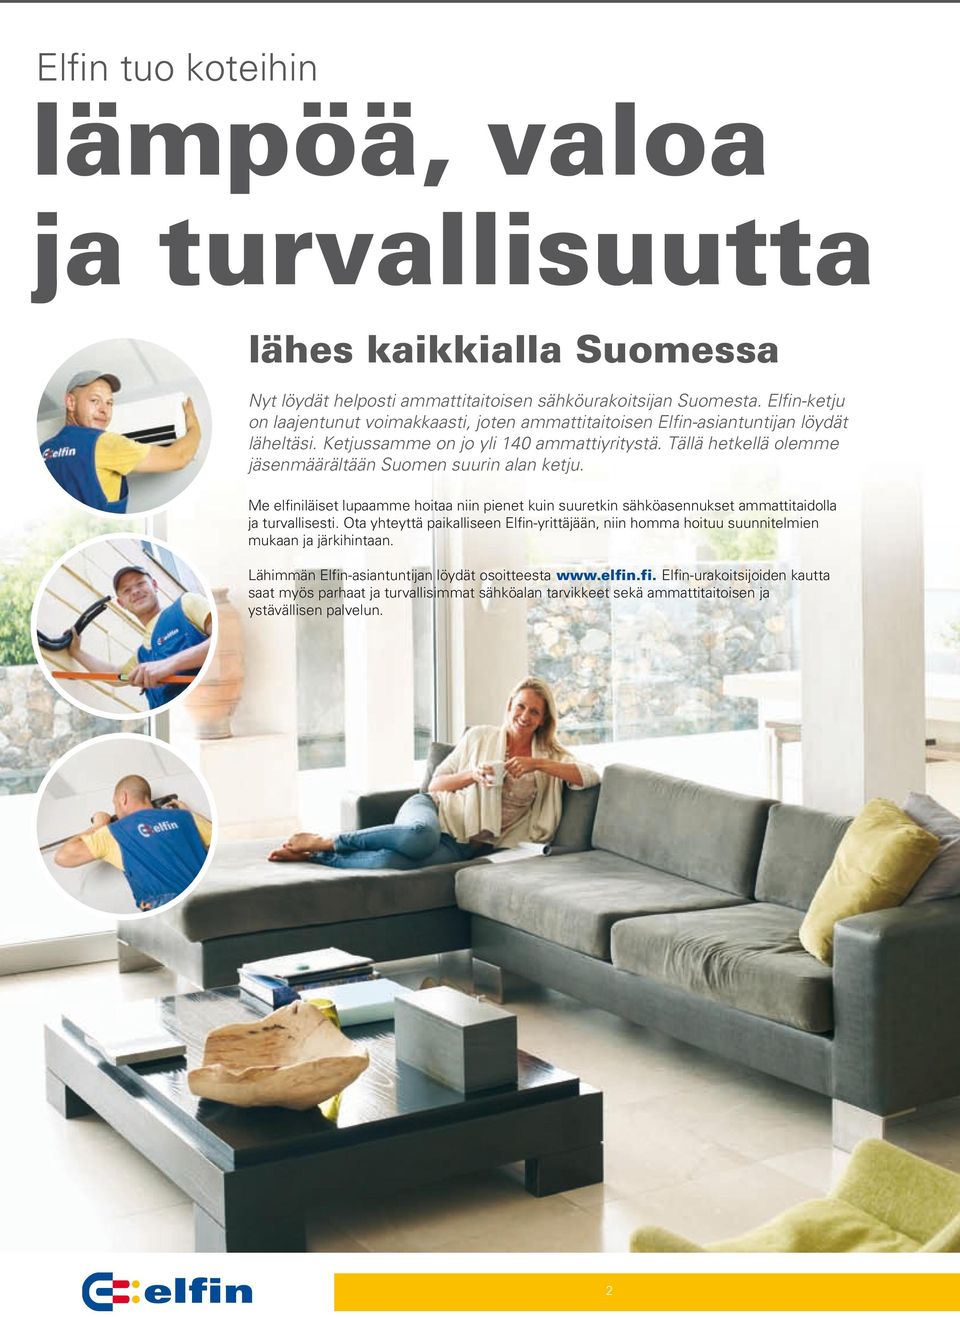 Tällä hetkellä olemme jäsenmäärältään Suomen suurin alan ketju. Me elfiniläiset lupaamme hoitaa niin pienet kuin suuretkin sähköasennukset ammattitaidolla ja turvallisesti.